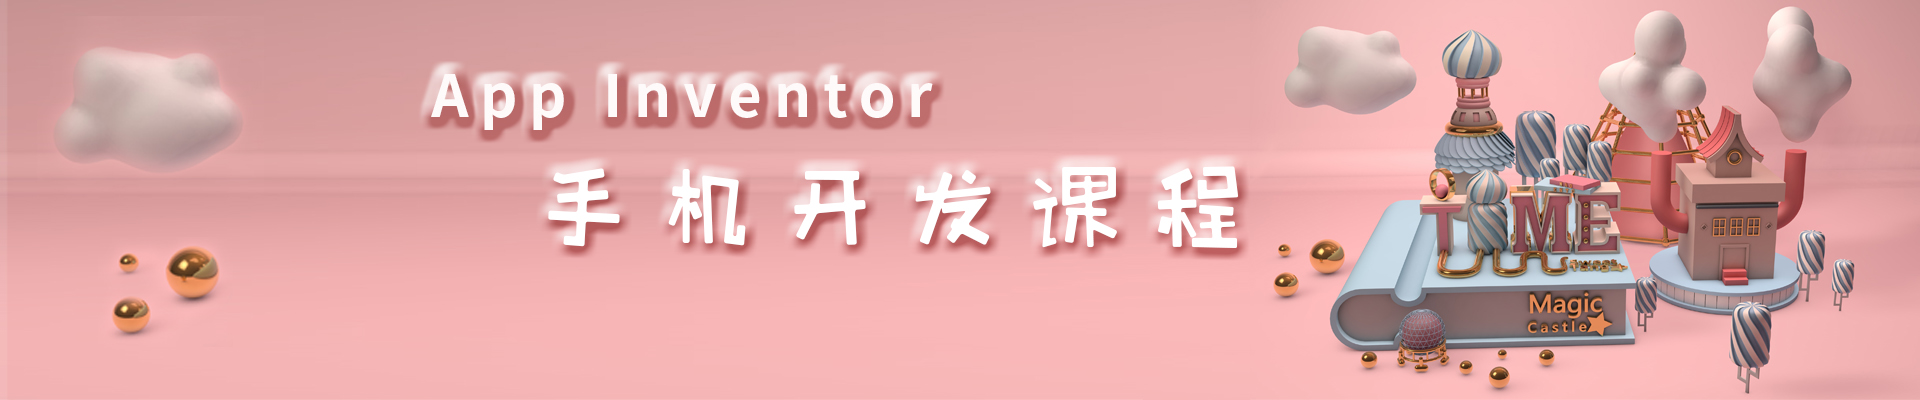 上海天山缤谷广场小码王少儿编程培训机构